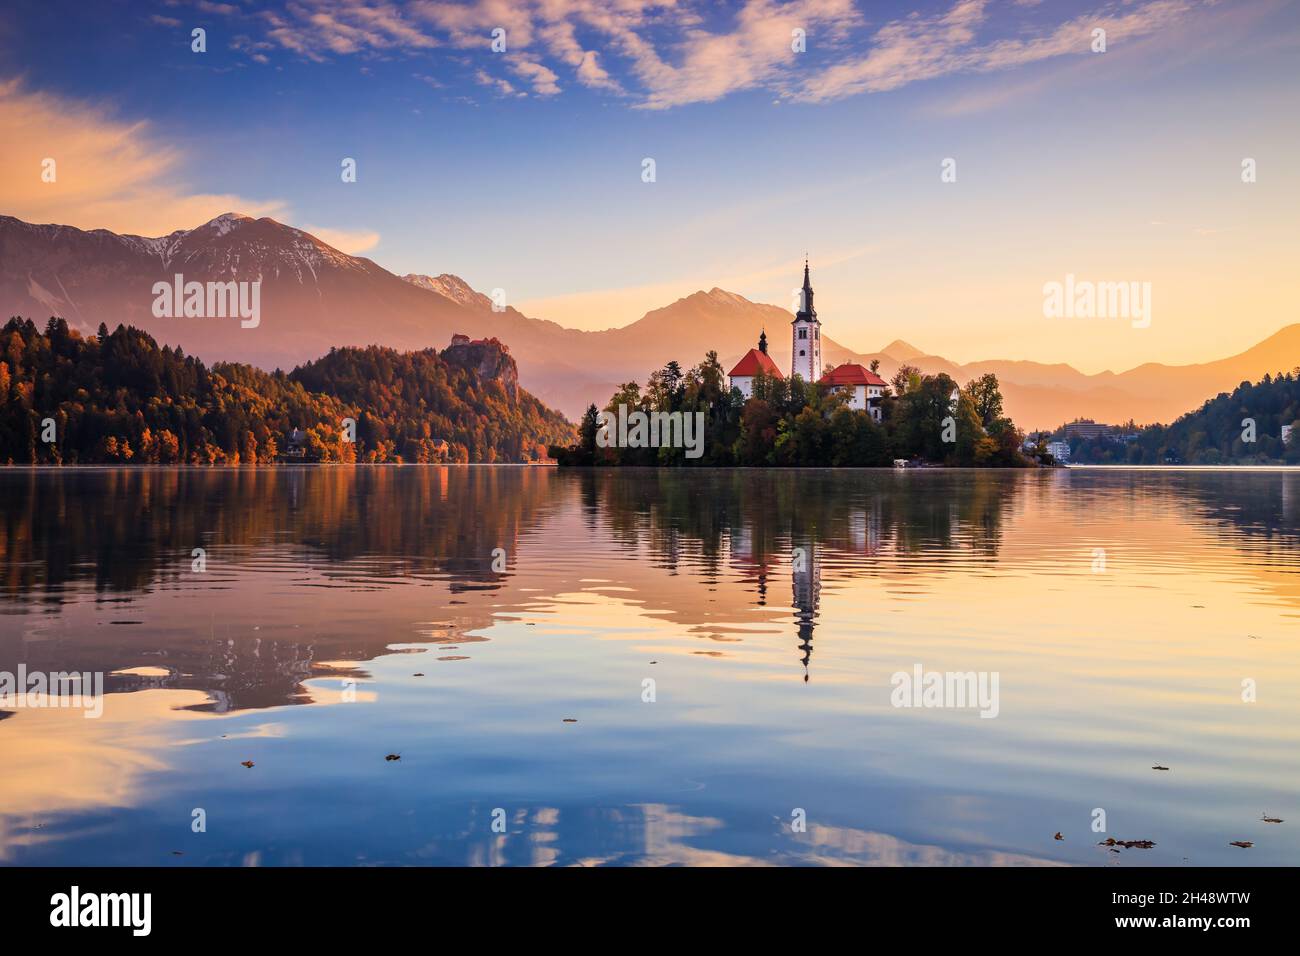 Bleder See, Slowenien. Sonnenaufgang am Bleder See mit der berühmten Insel Bled und dem historischen Schloss Bled im Hintergrund. Stockfoto